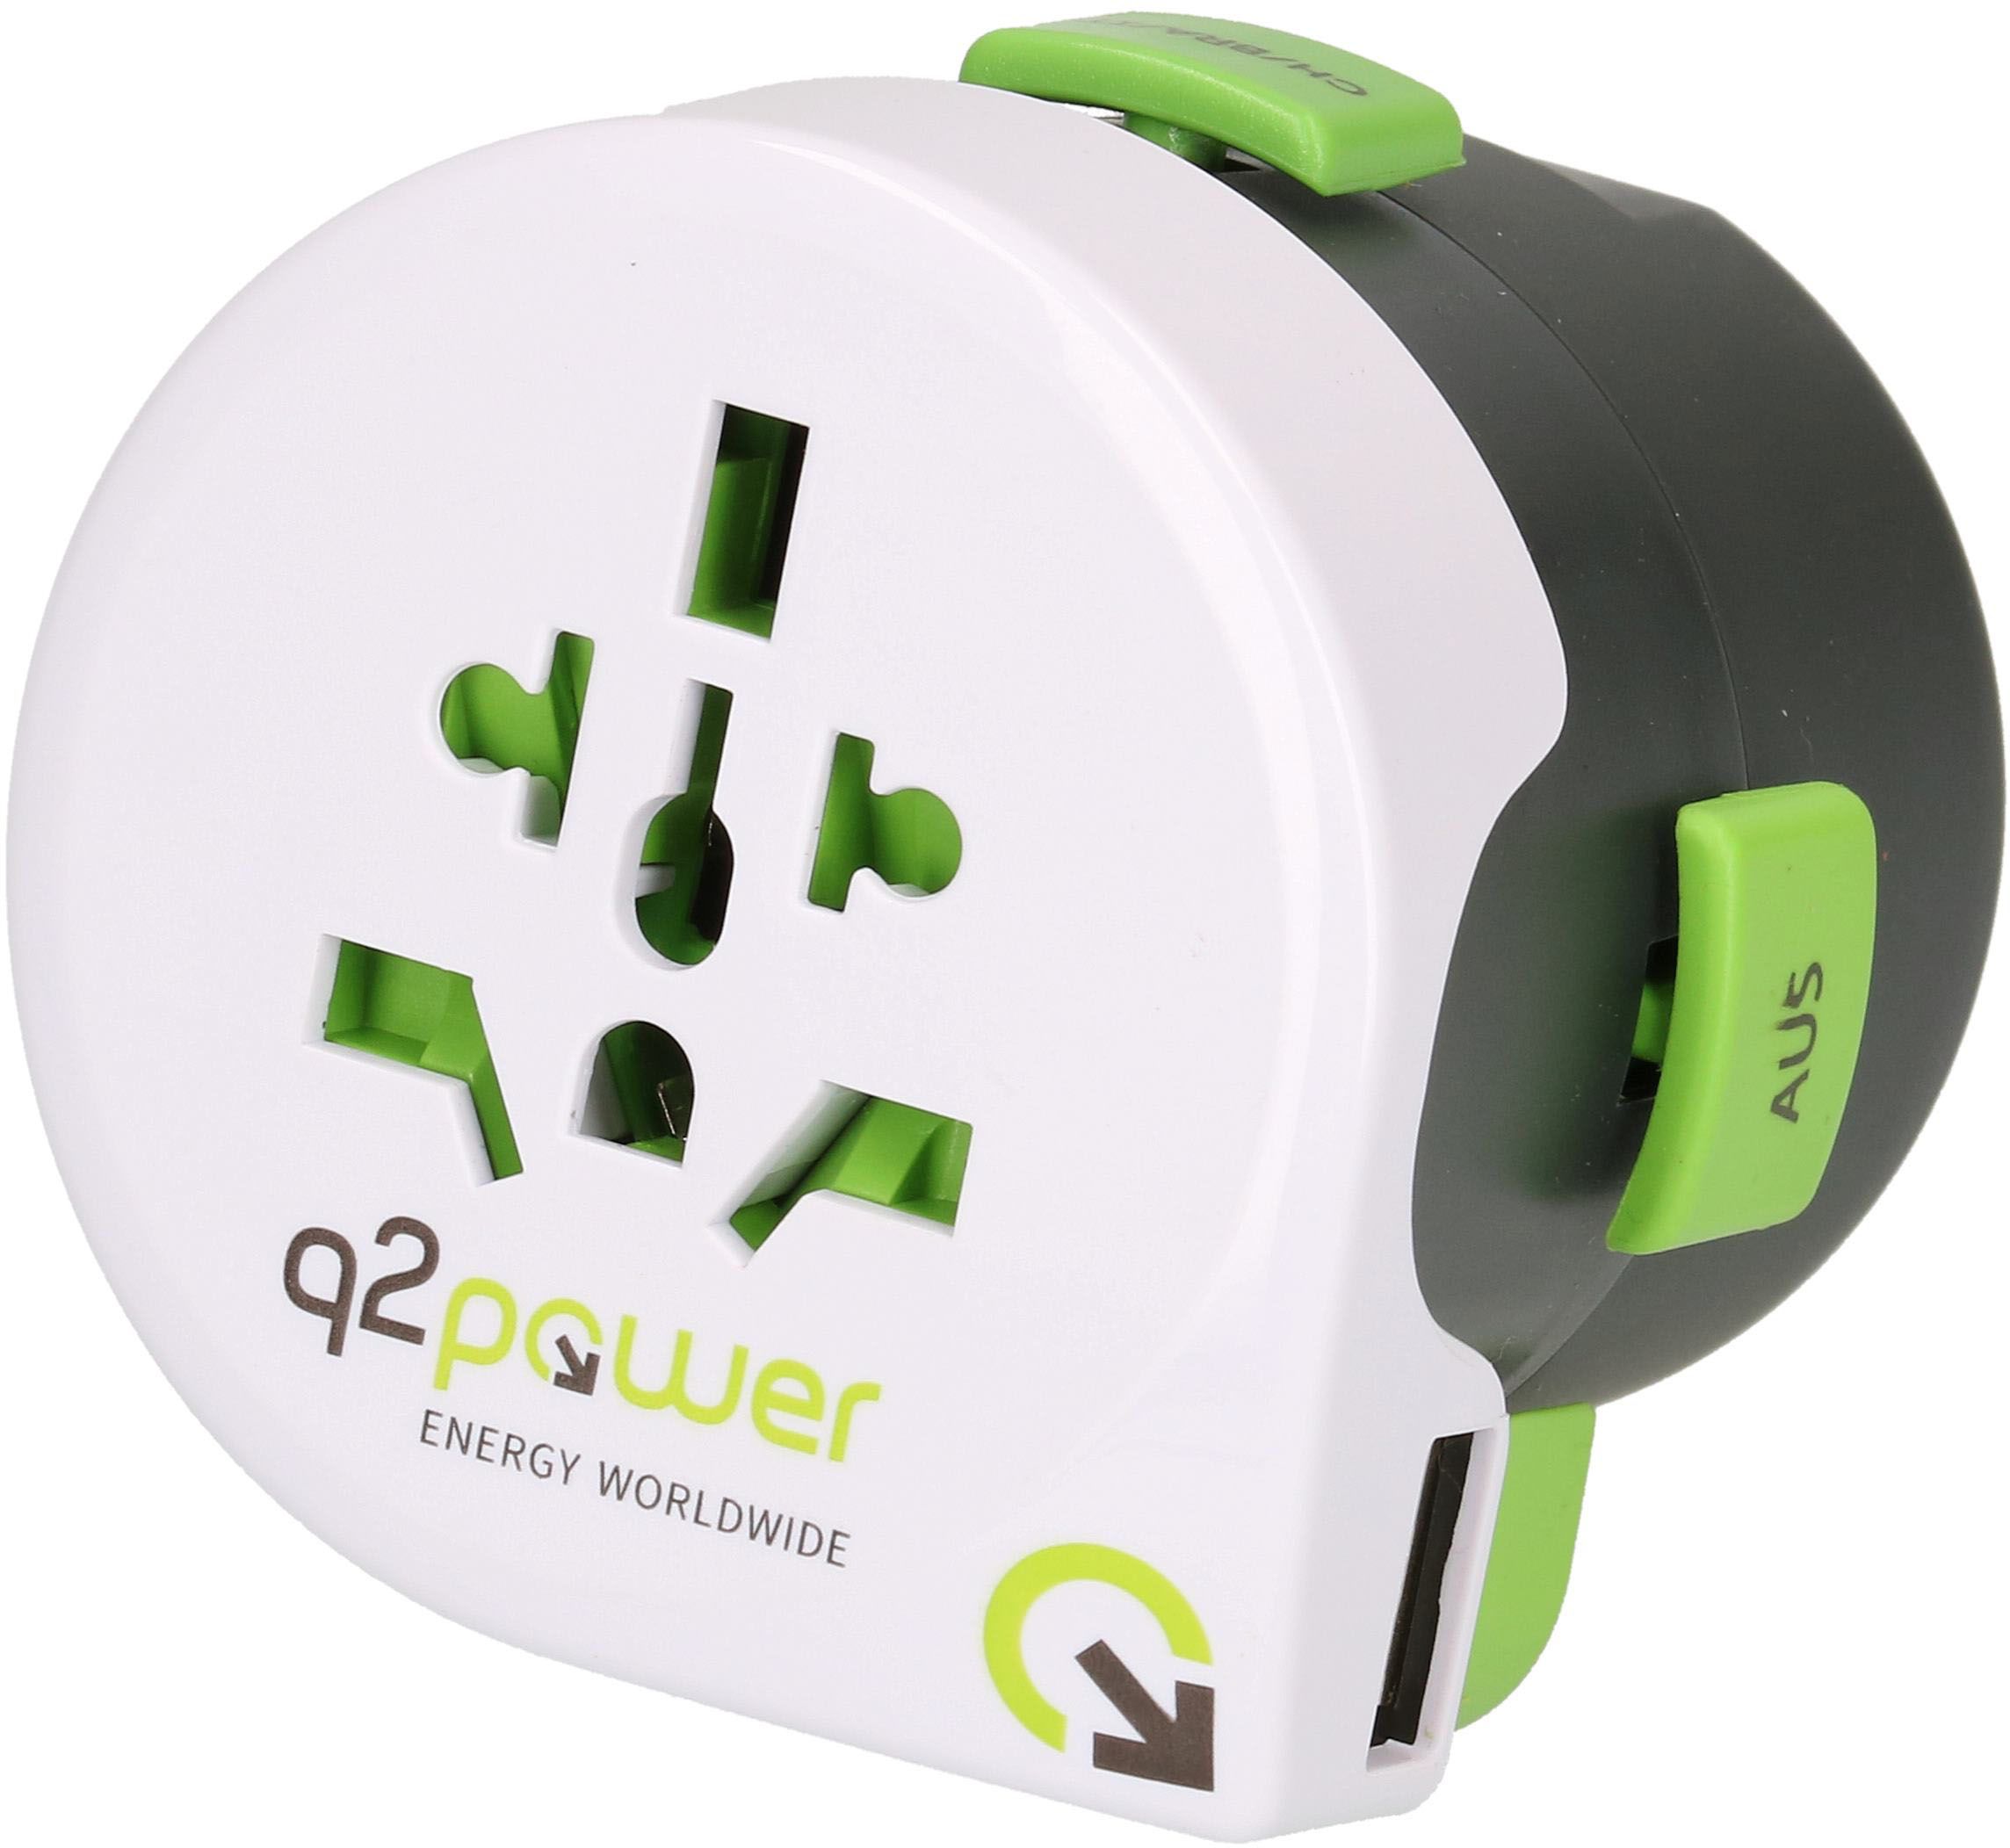 adaptateur de voyage monde "QDAPTER" avec USB 2.1A